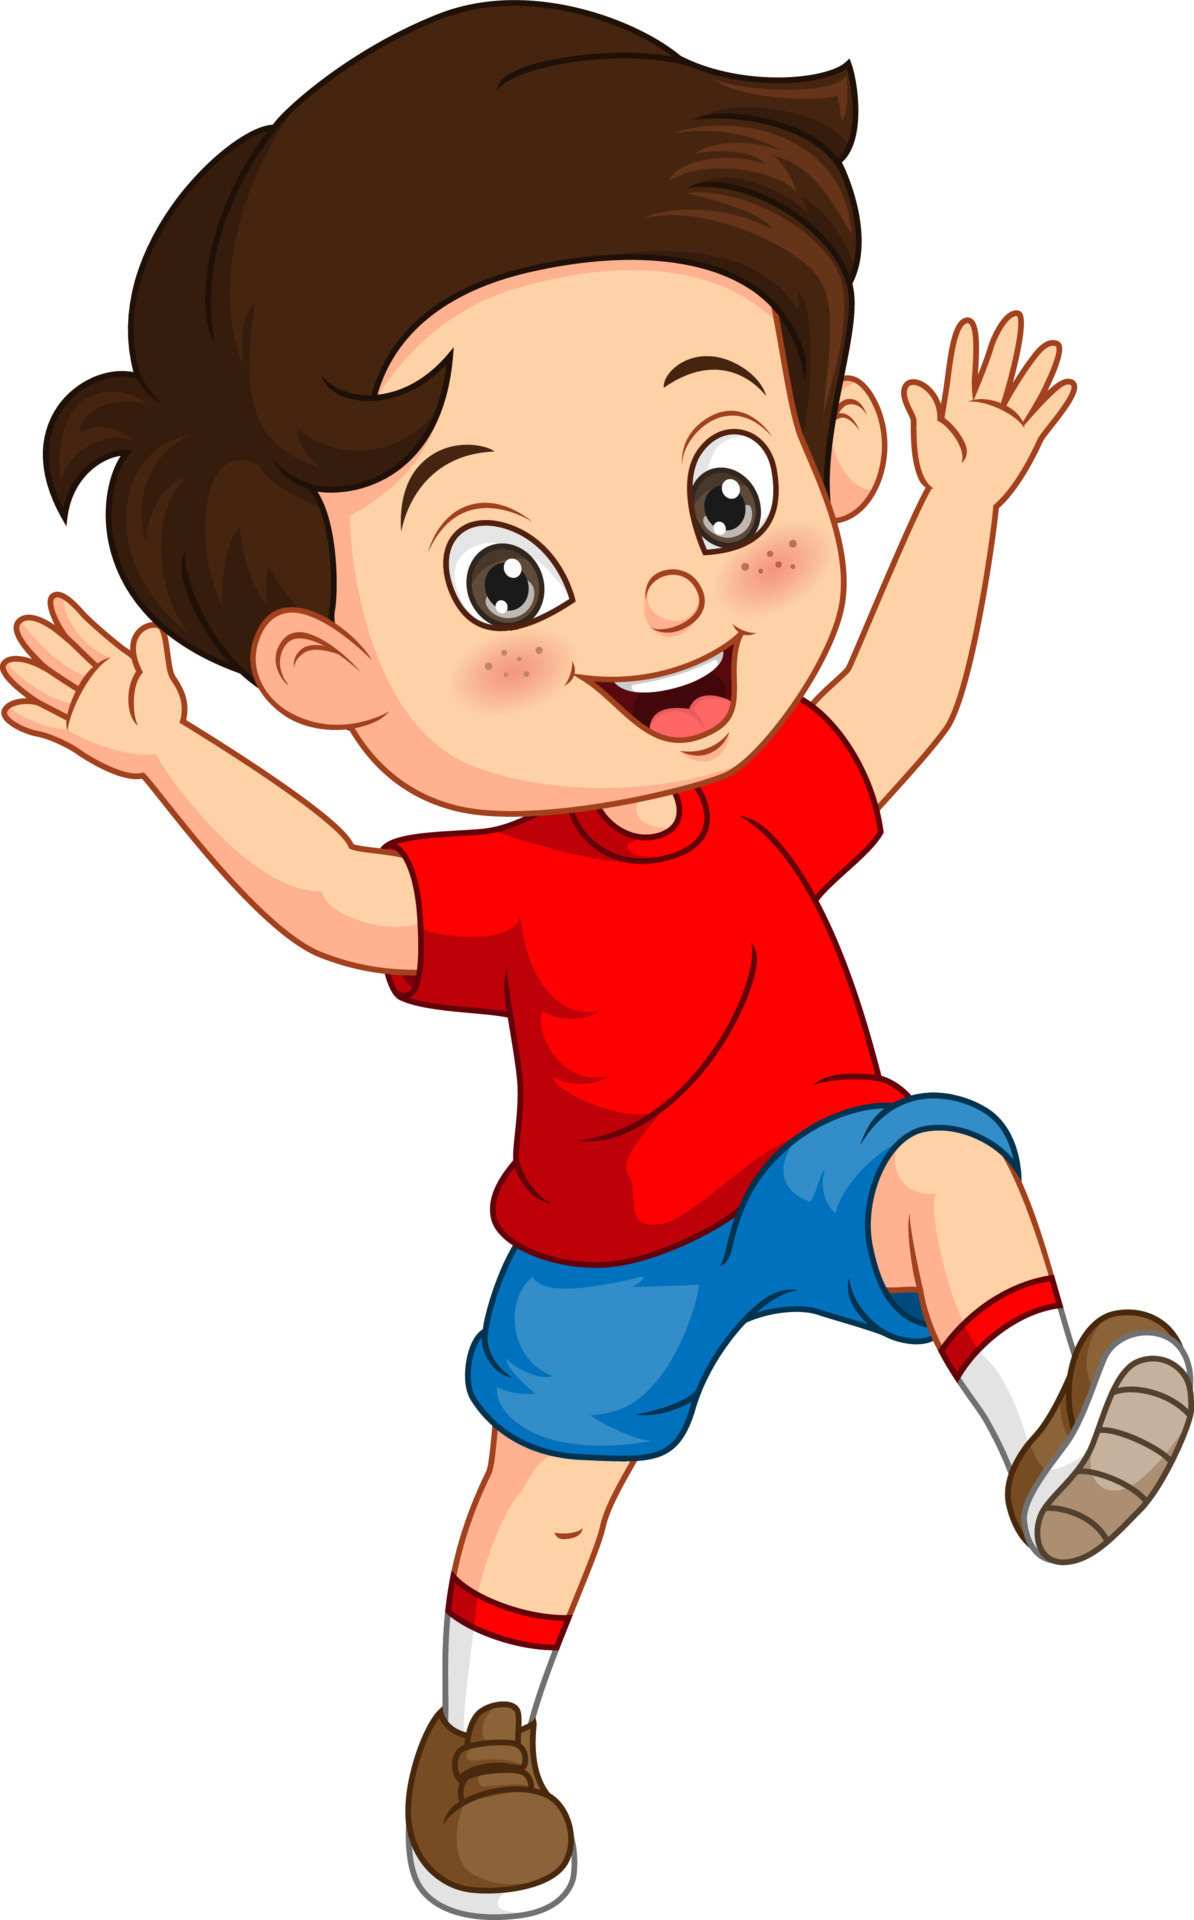 Cartoon happy little boy raising hands 5112745 Vector Art at Vecteezy